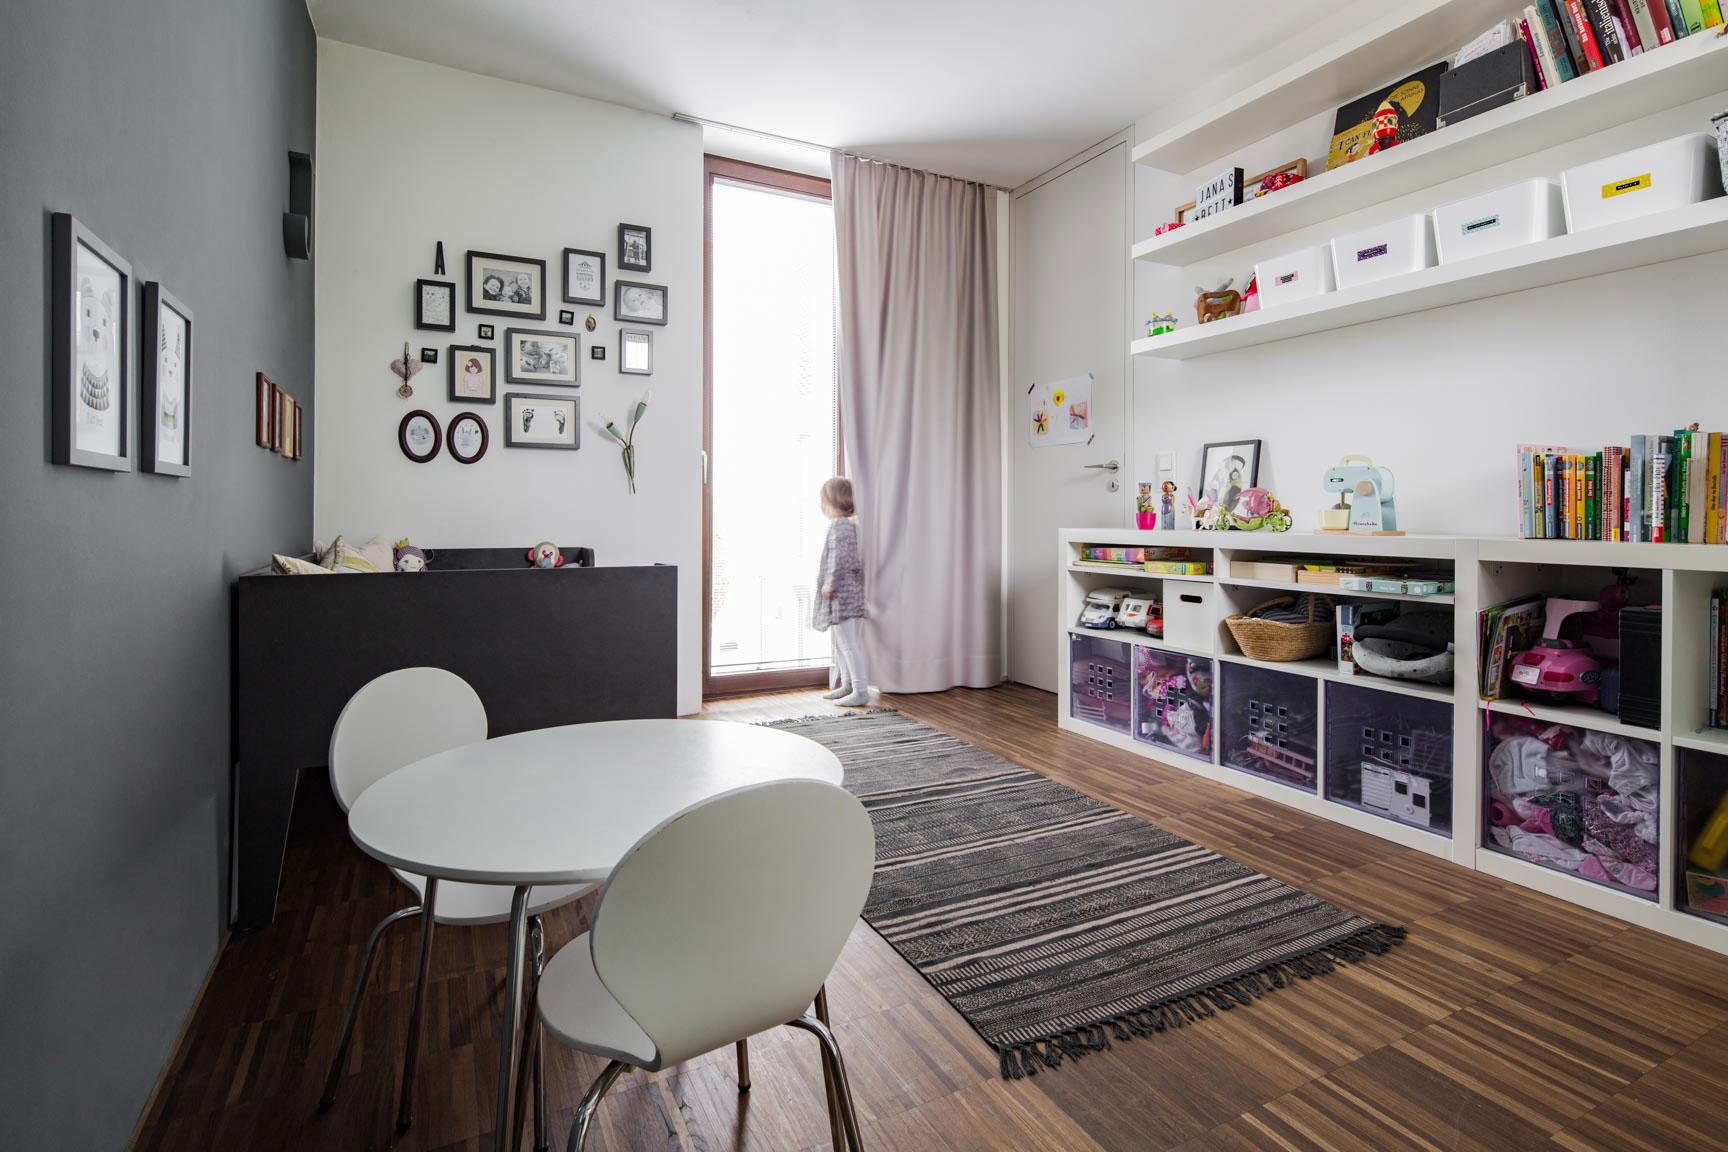 Kinderzimmer | Regalkombination #teppich #stauraum ©Heike Schwarzfischer | Alexey Testov